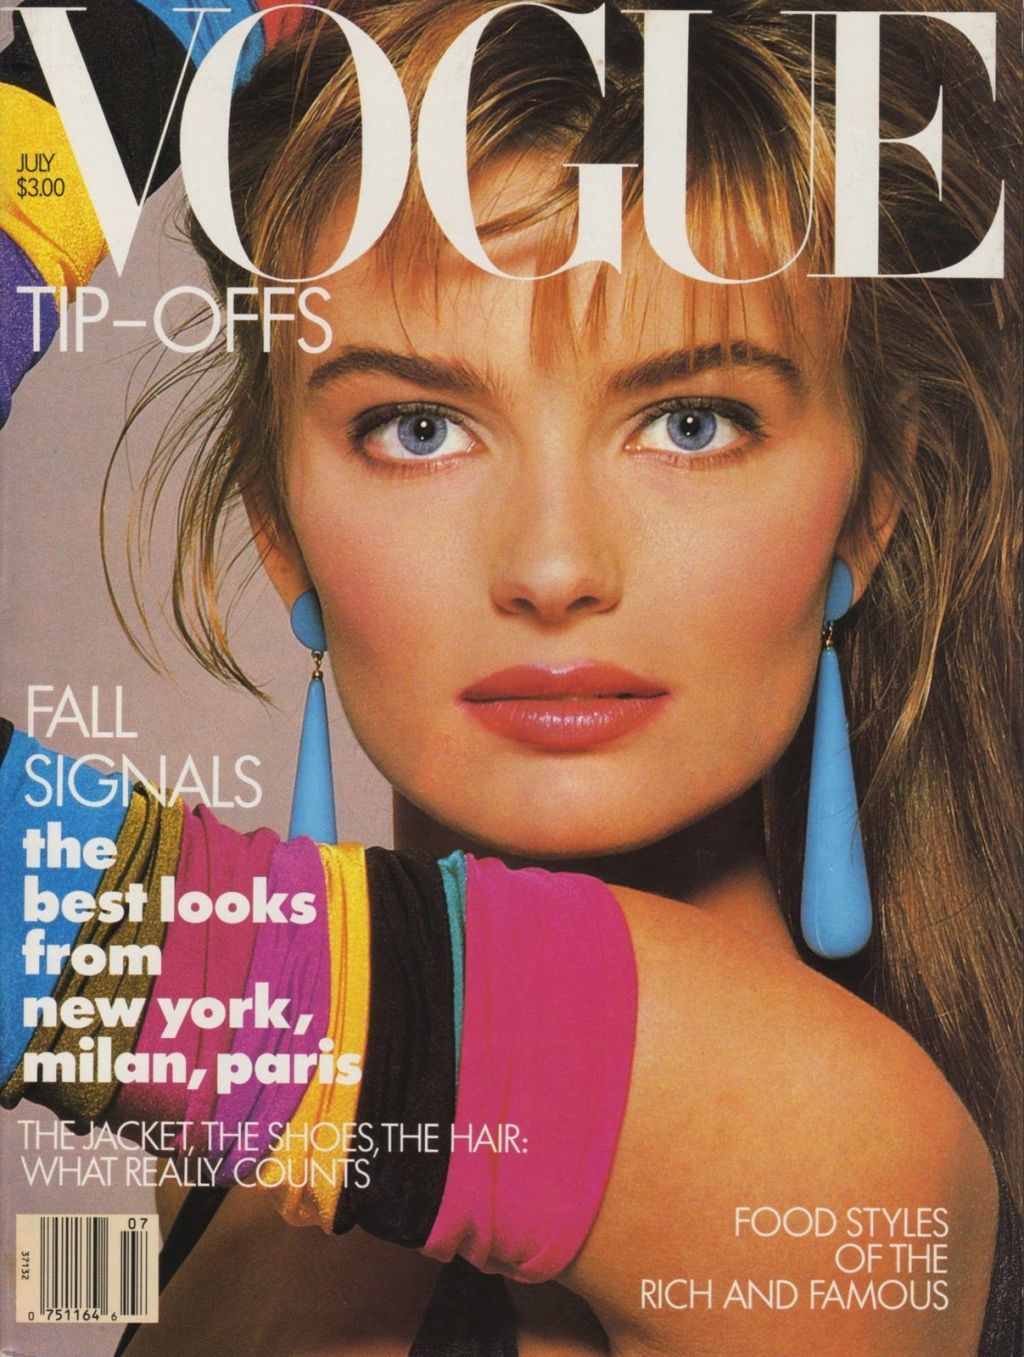 trang bìa thịnh hành năm 1987 với bìa neon, thời trang những năm 1980